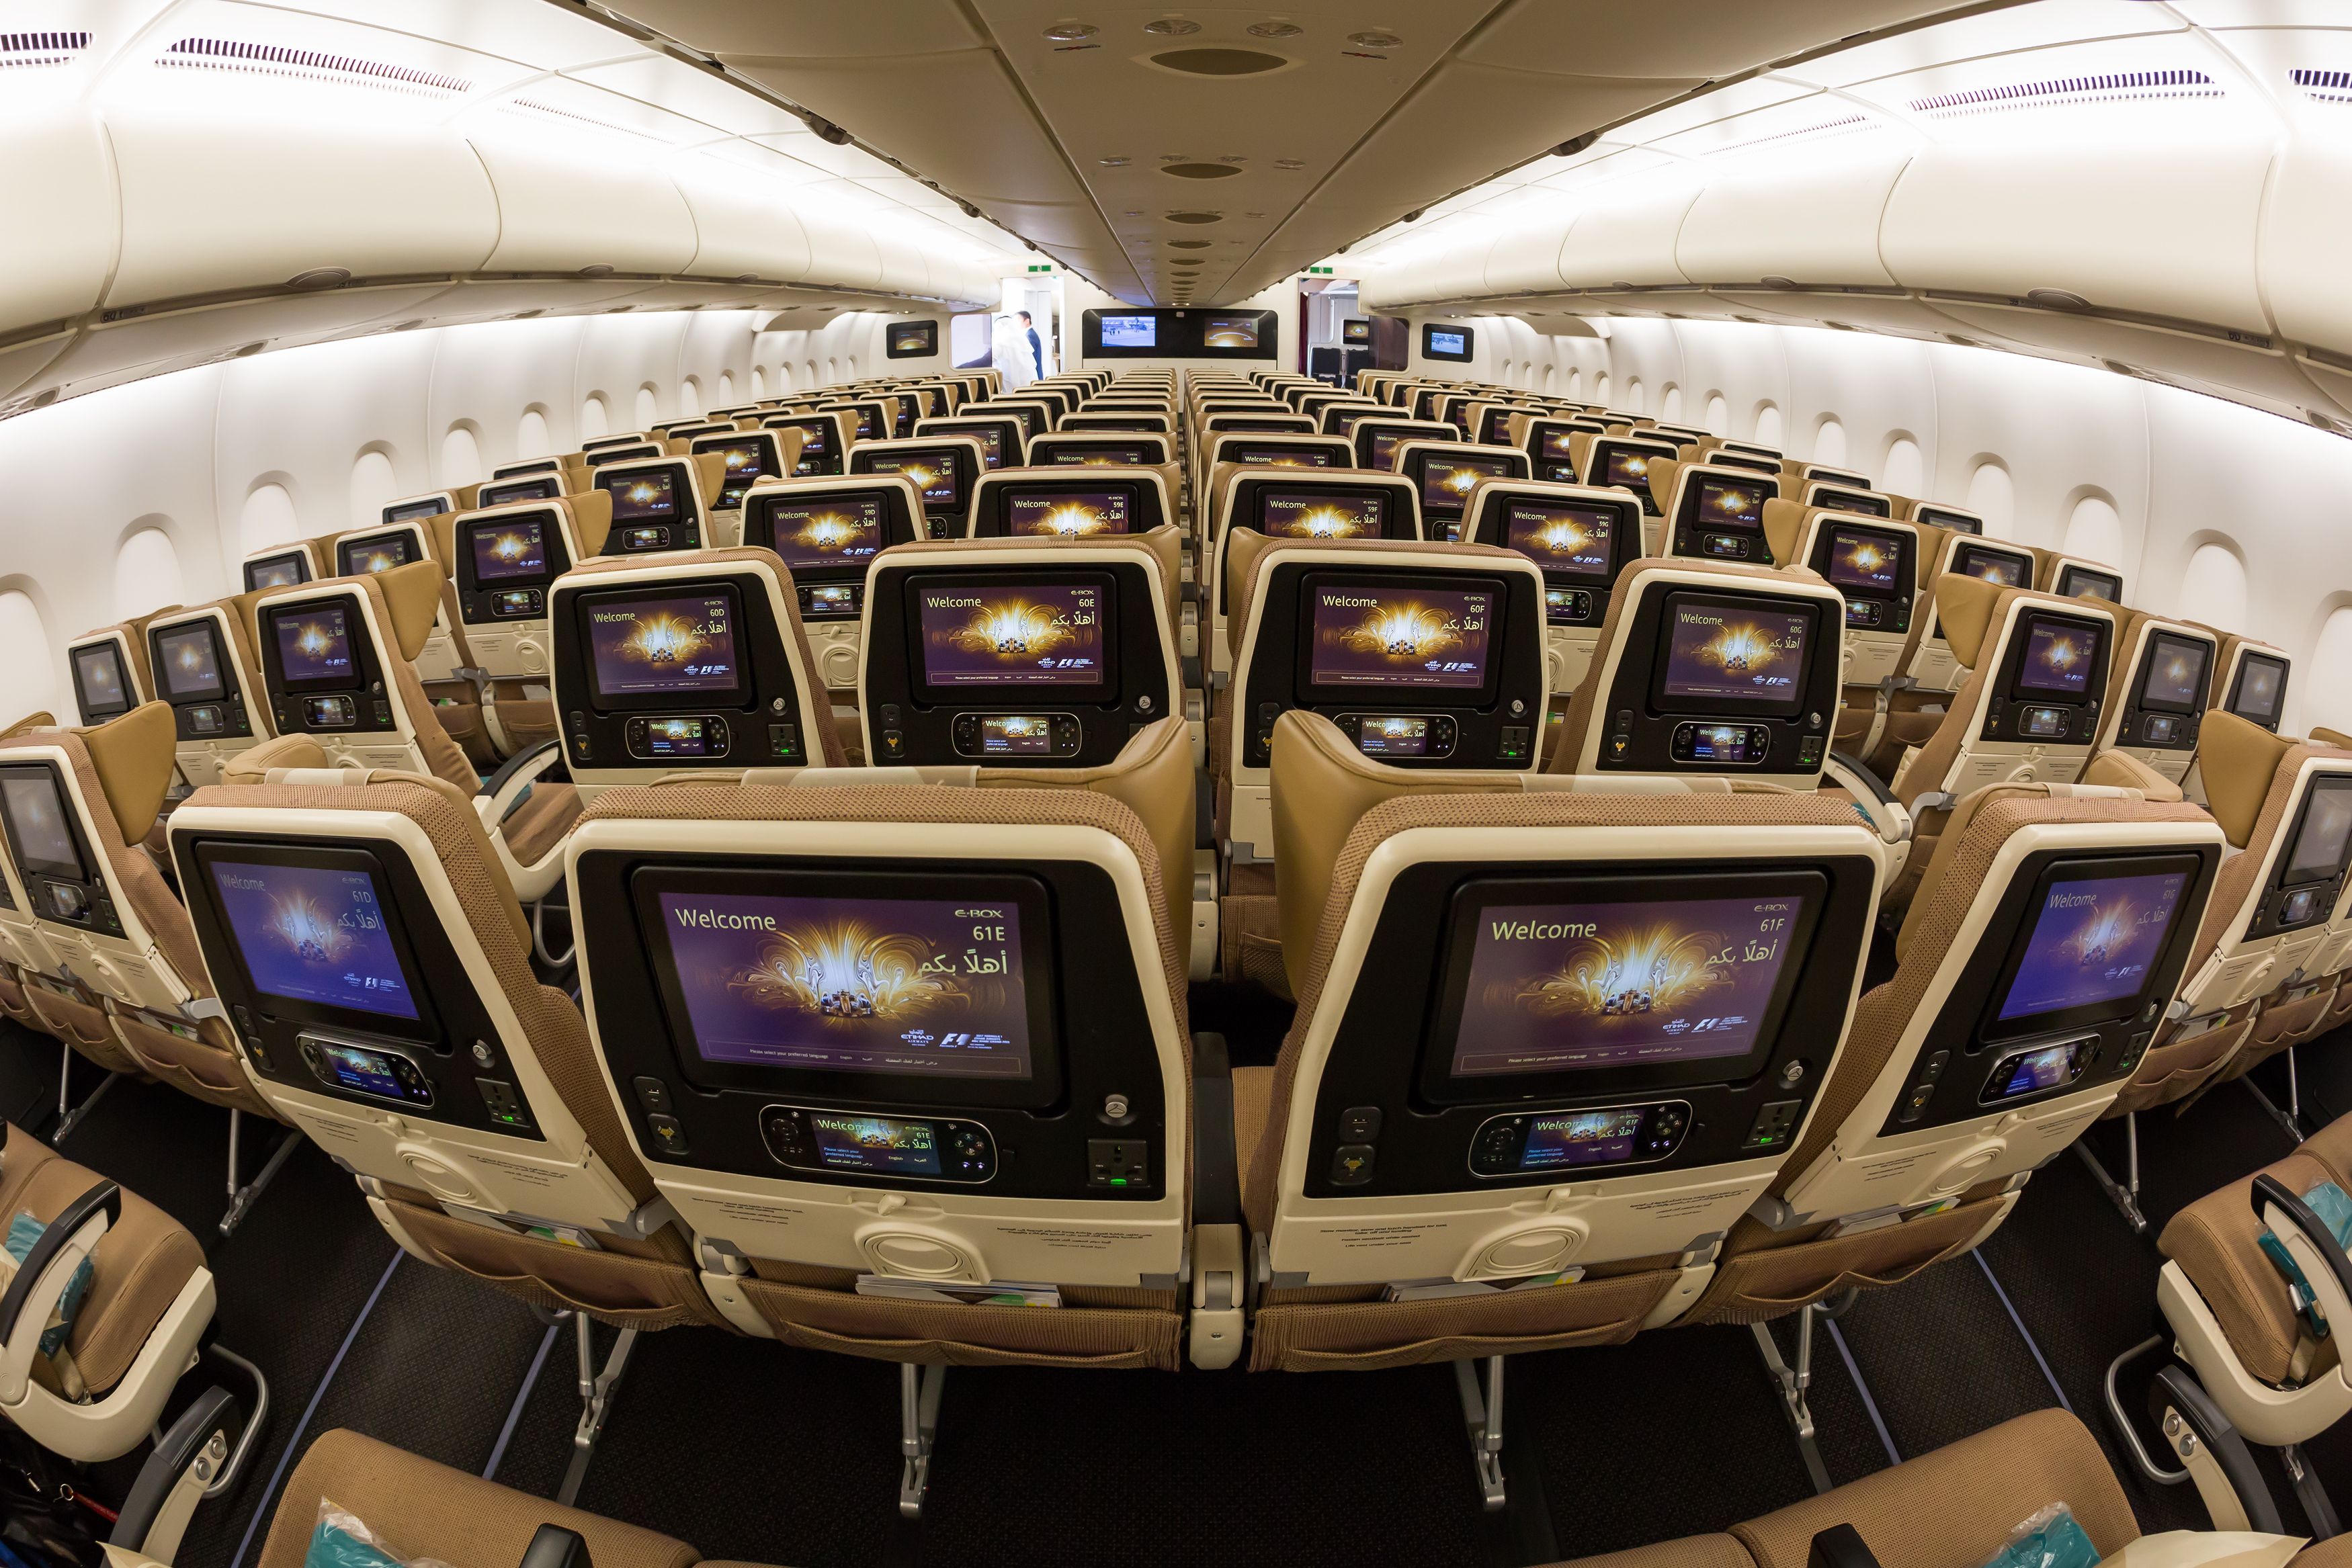 Inside the Etihad Airways economy Cabin.